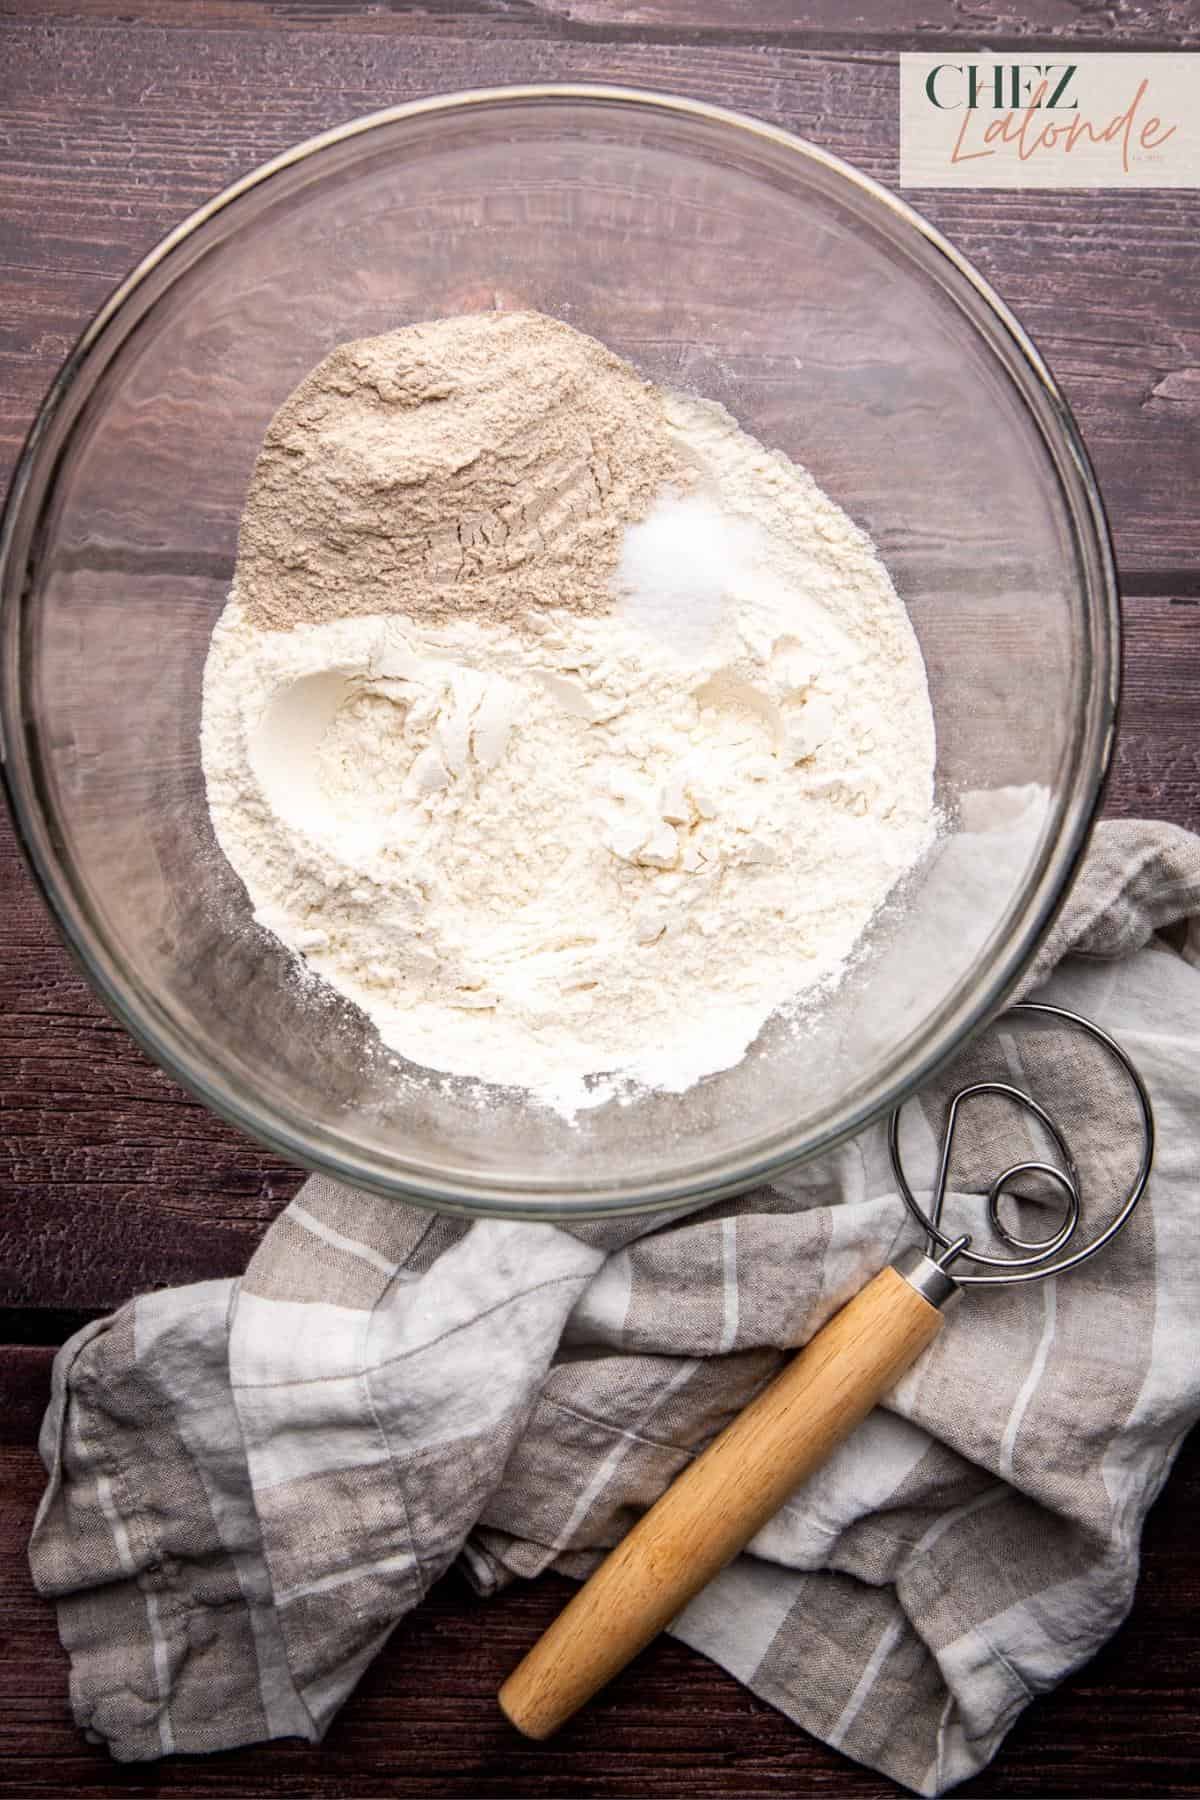 Combine ½ cup of whole wheat flour, 2 1/3 cups of all-purpose flour, 1 teaspoon of sea salt.